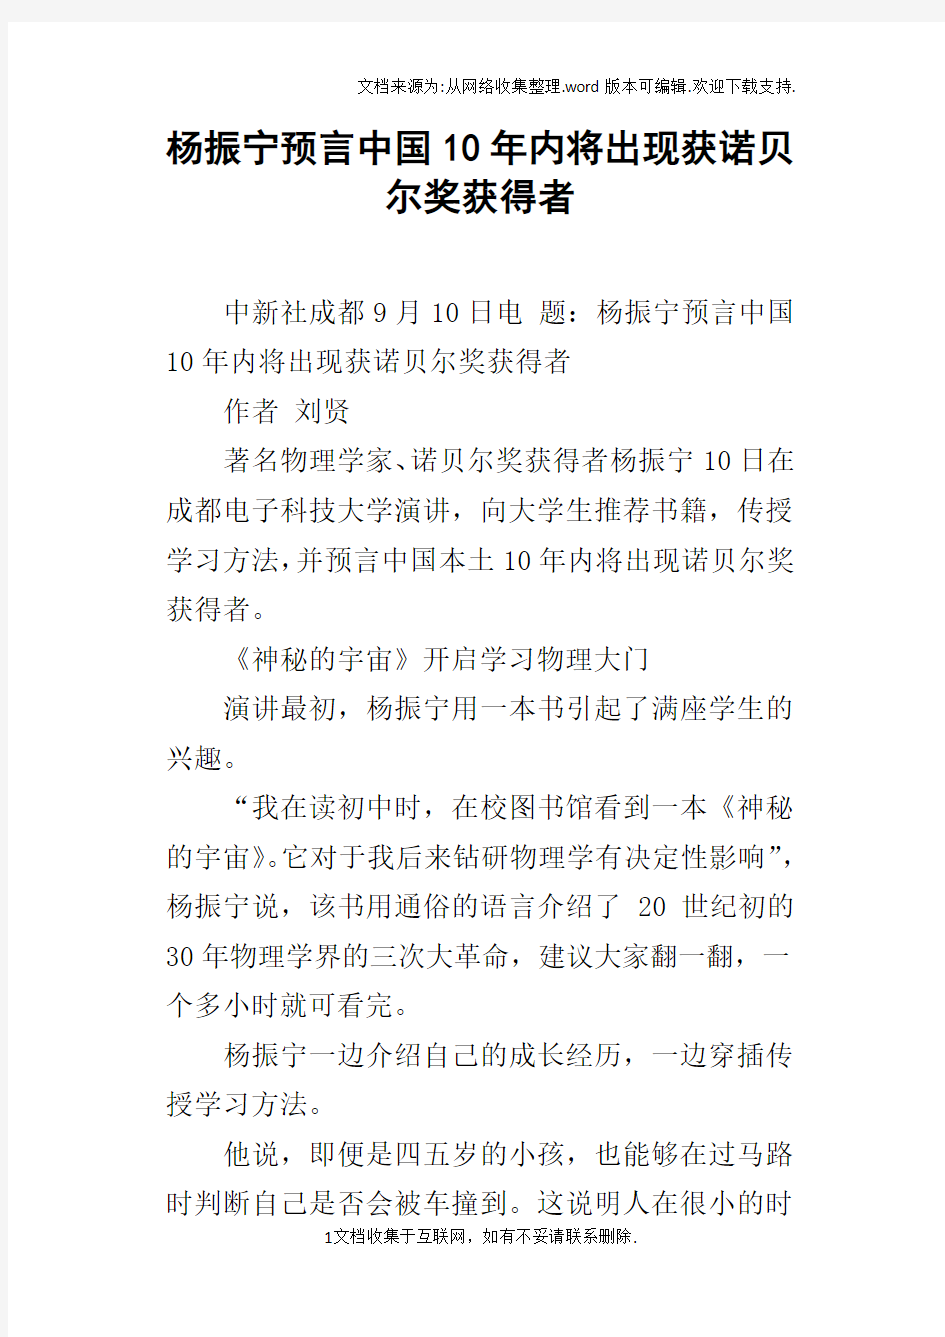 杨振宁预言中国10年内将出现获诺贝尔奖获得者